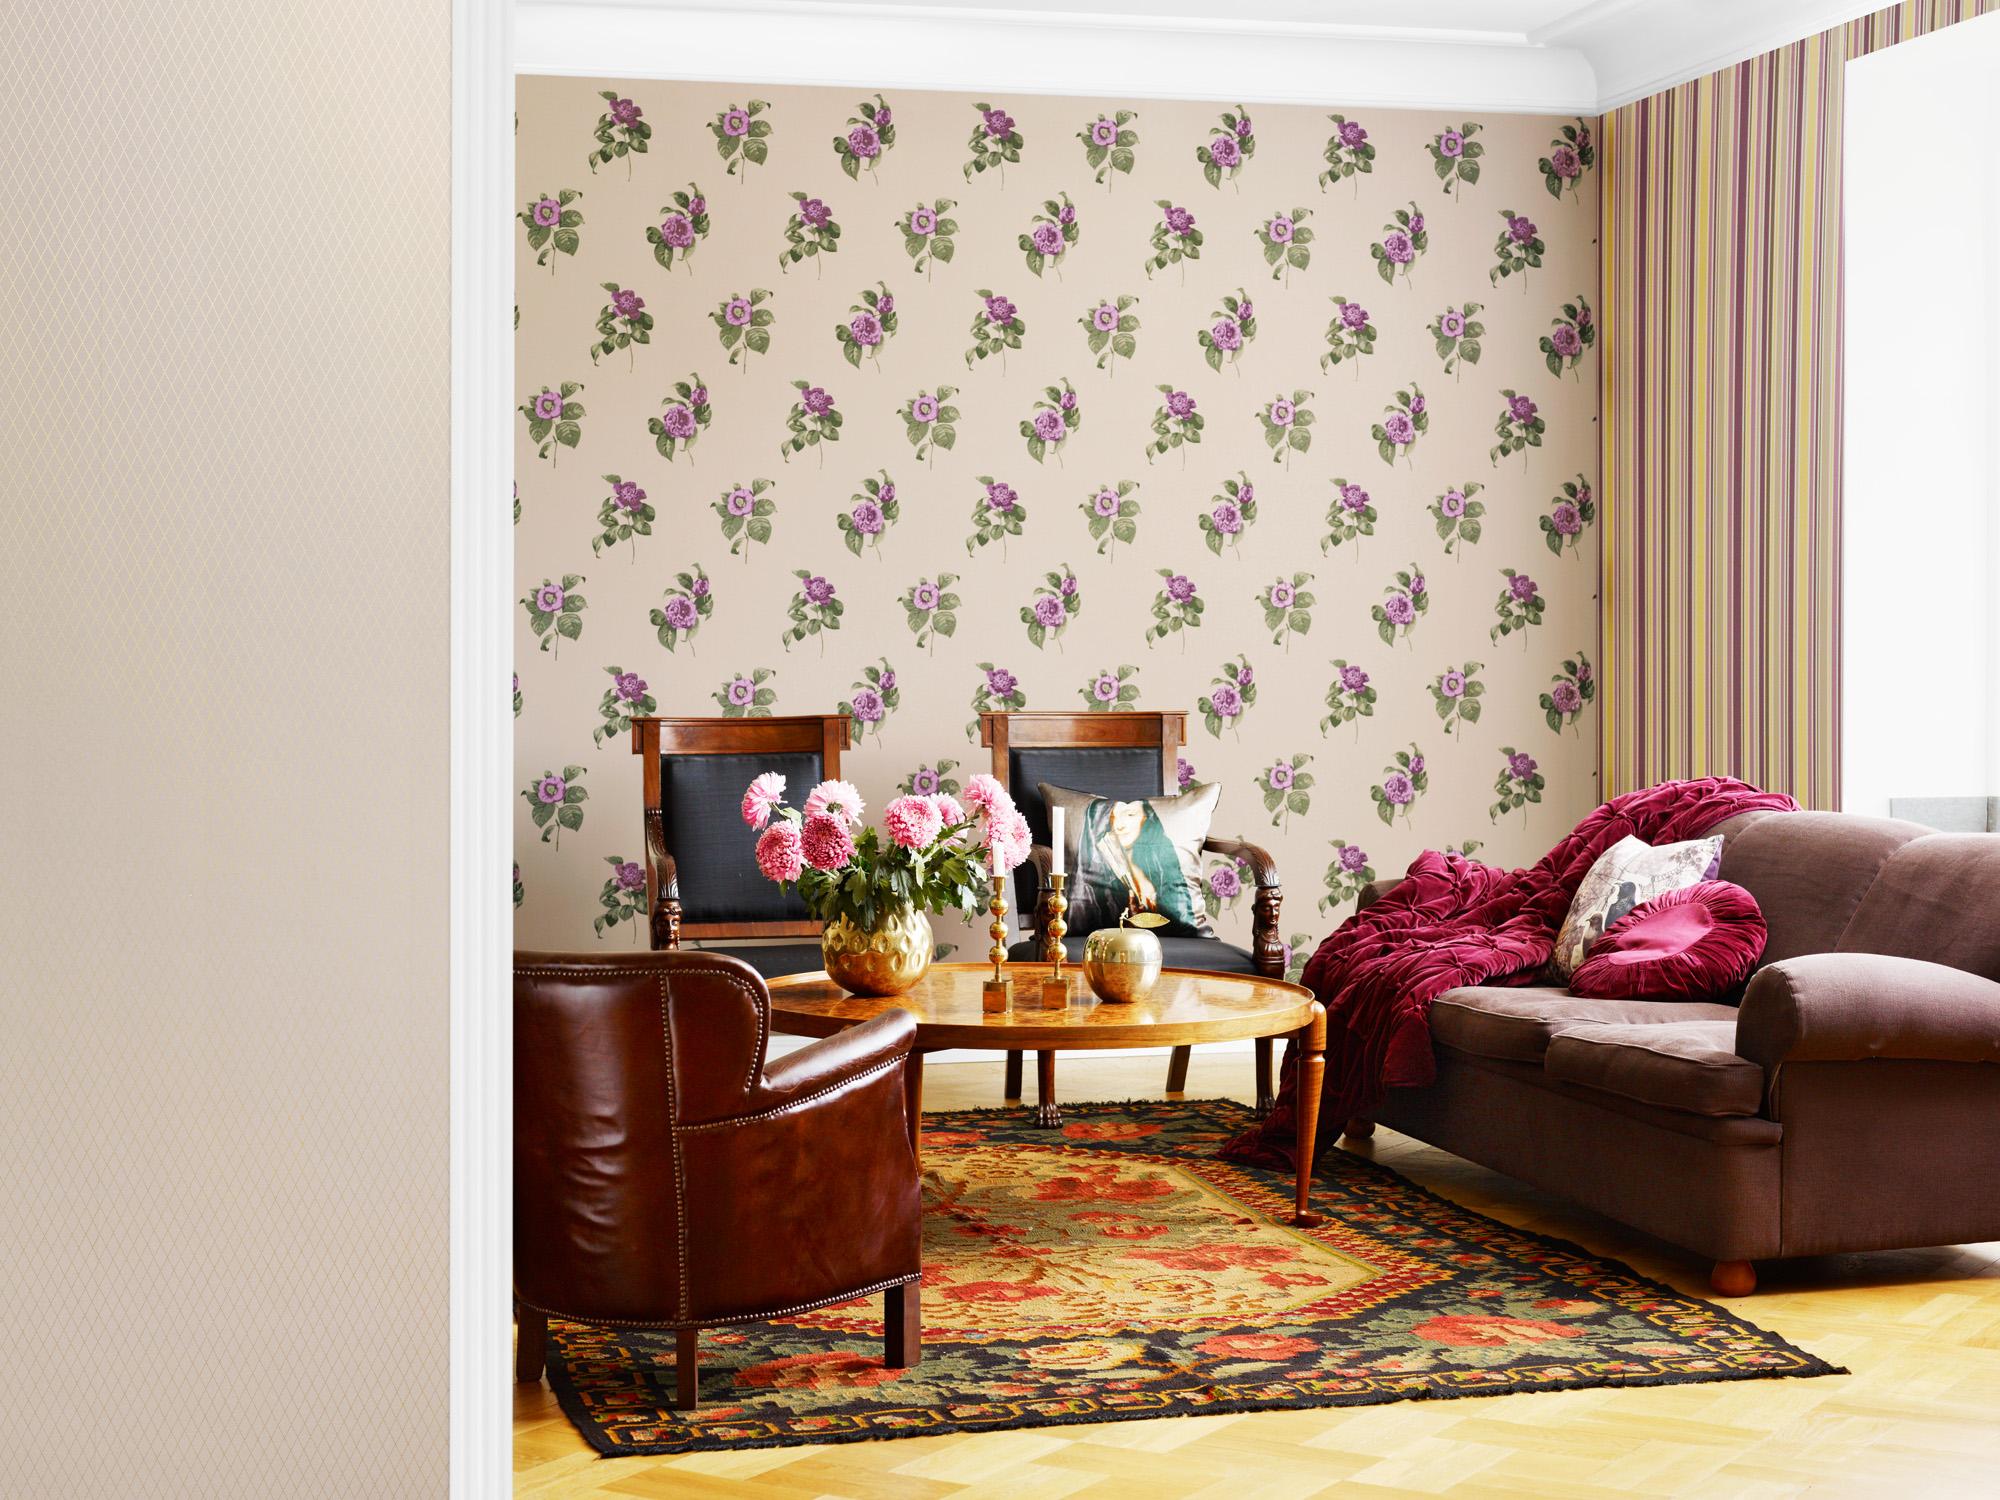 Klassische Möbel kombiniert mit Mustertapete #beistelltisch #teppich #sessel #wandgestaltung #mustertapete ©Boras Tapeter